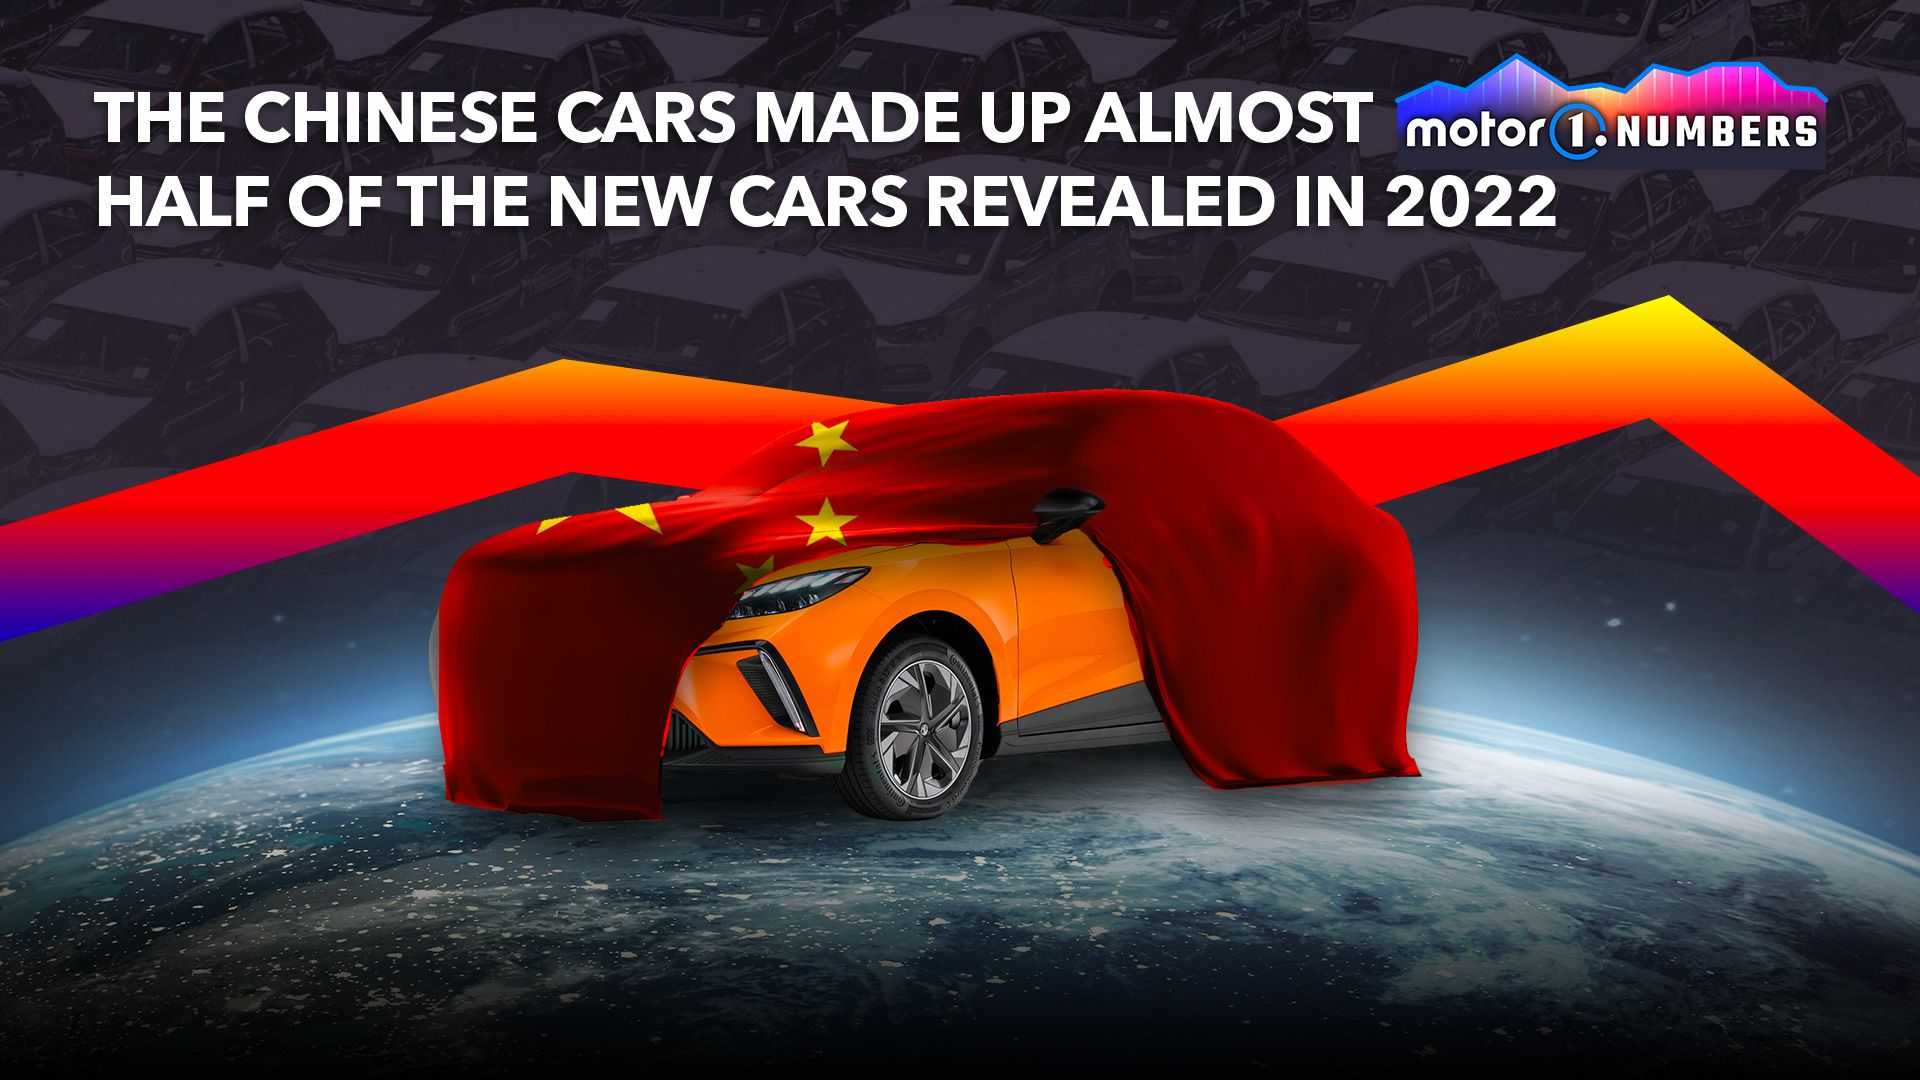 1-سهم 50 درصدی چینی ها از رونمایی خودروهای جدید در دنیا